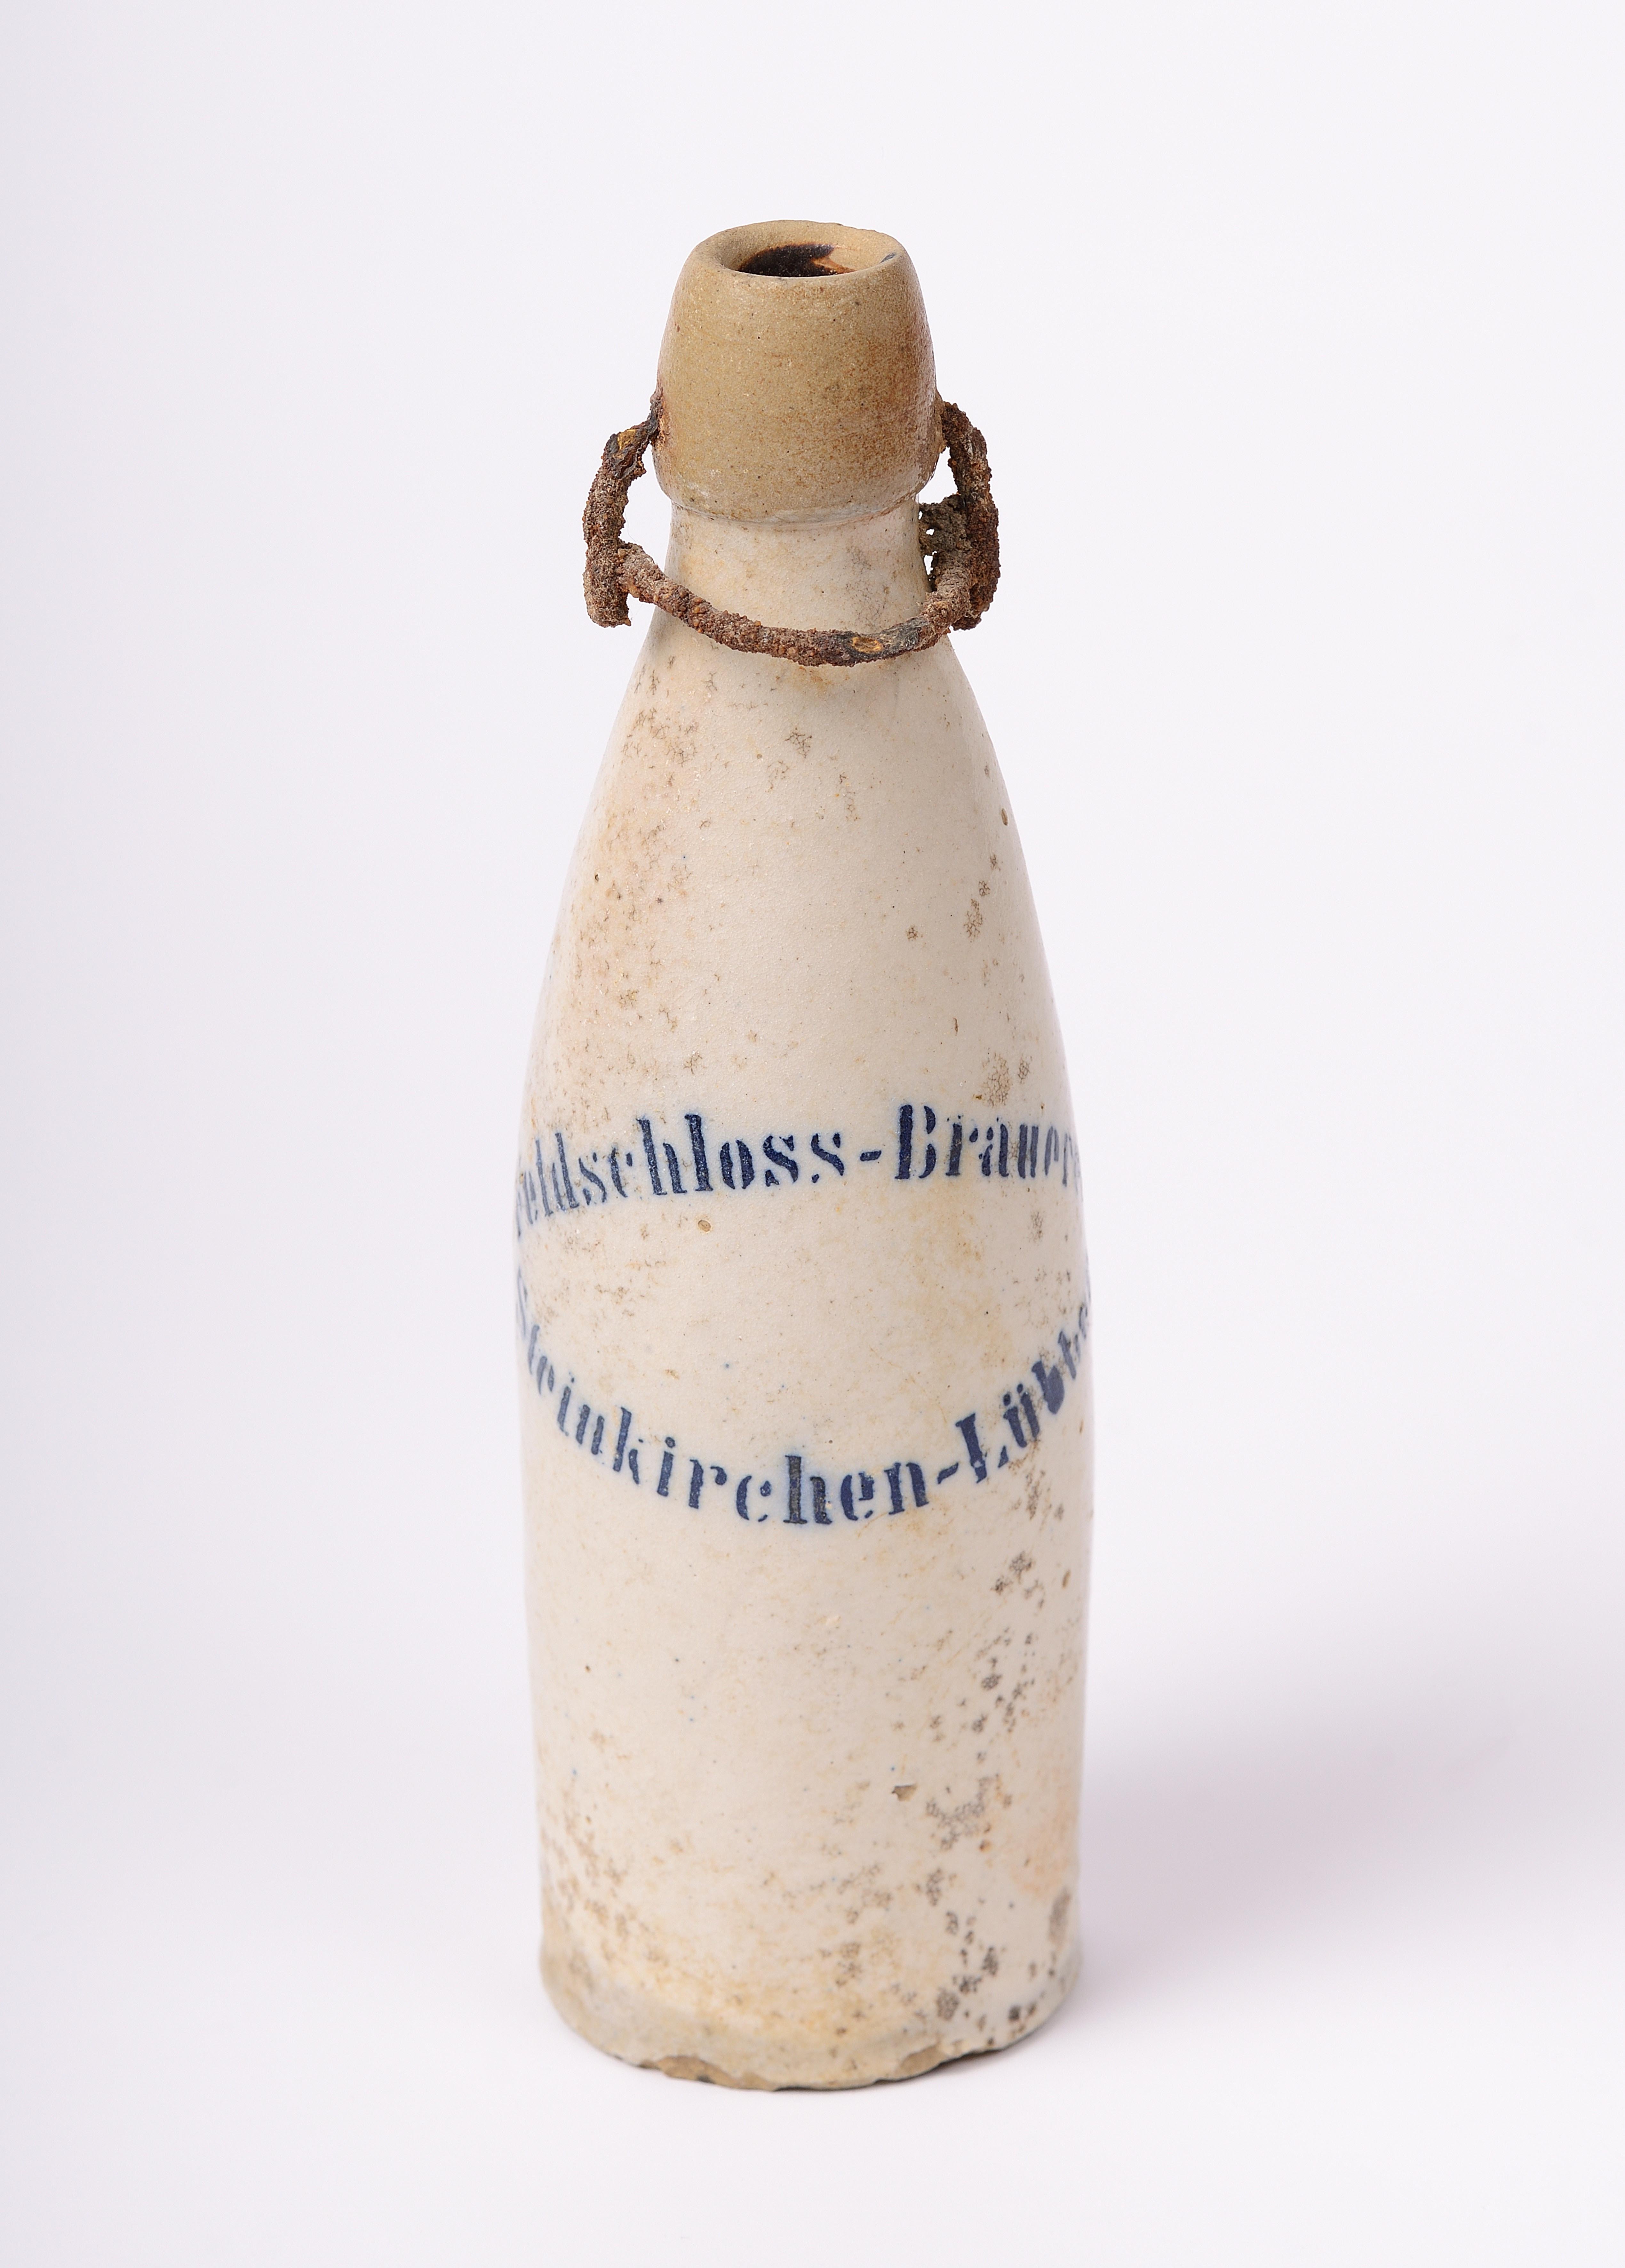 Tönerne Bierflasche der Feldschloss-Brauerei in Steinkirchen-Lübben, um 1910 (Museumsverbund Landkreis Dahme-Spreewald CC BY-NC-SA)